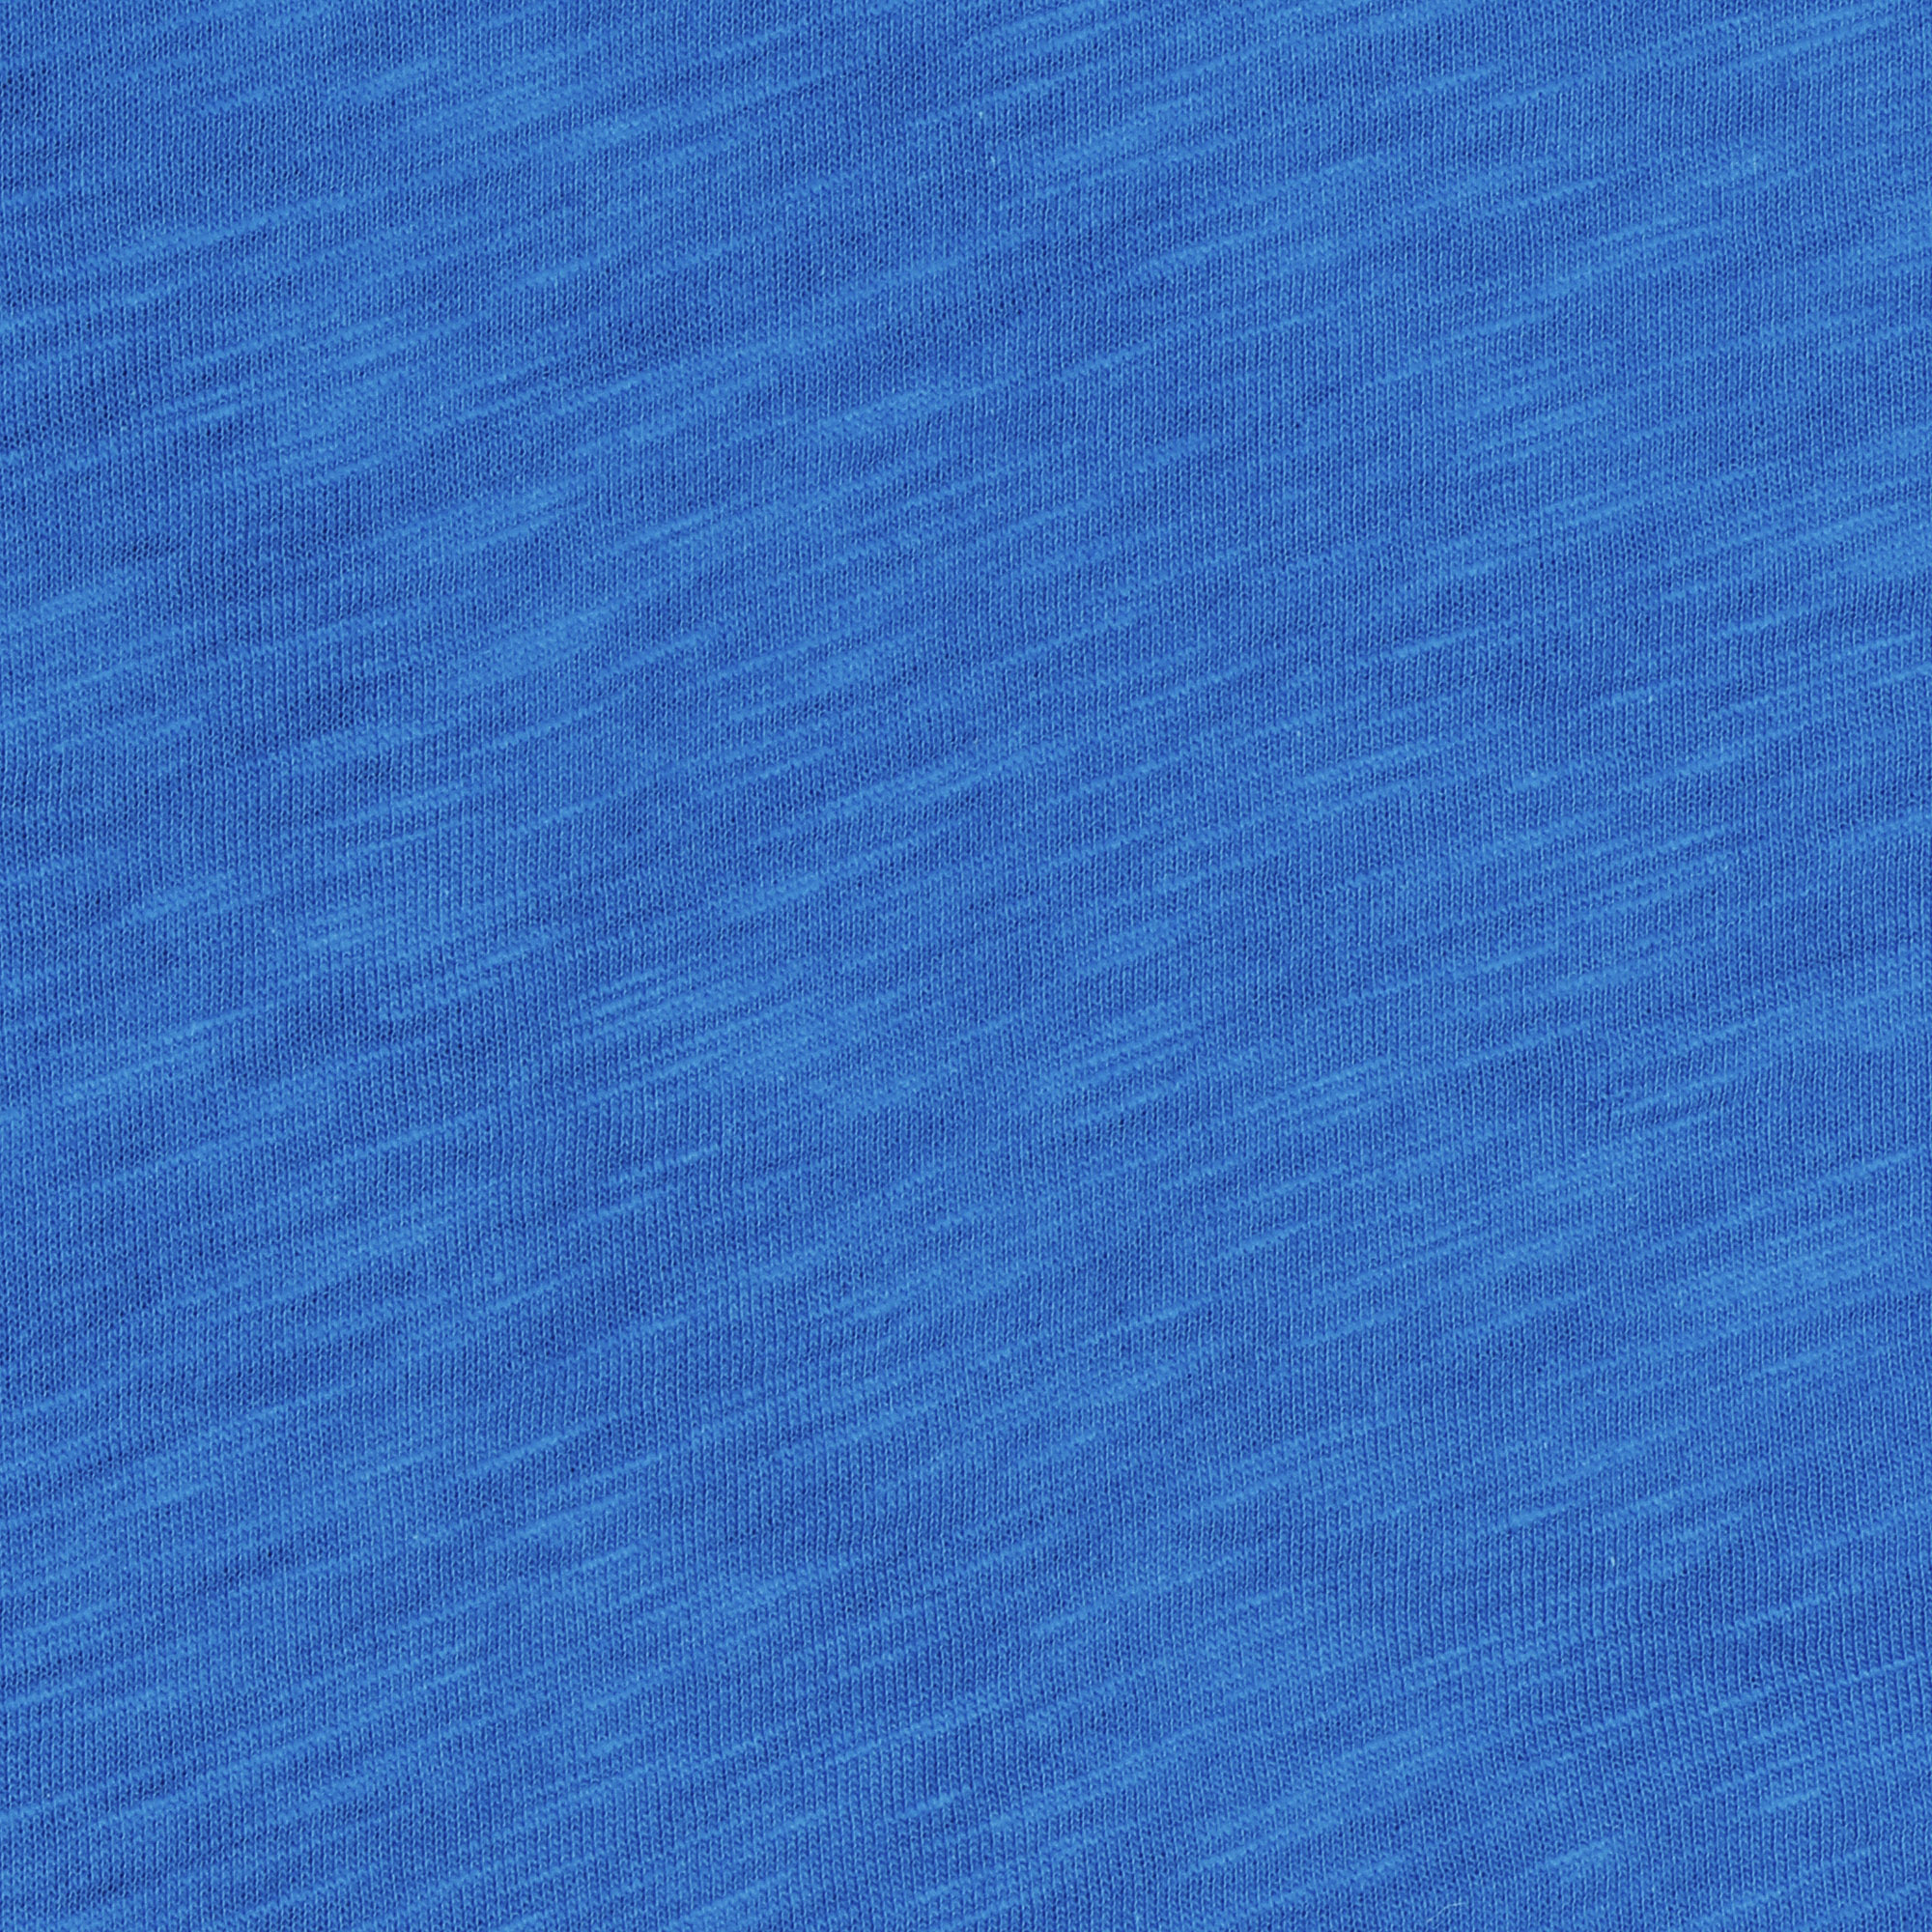 Футболка мужская Pantelemone MF-918 синяя 46, цвет синий, размер 46 - фото 2